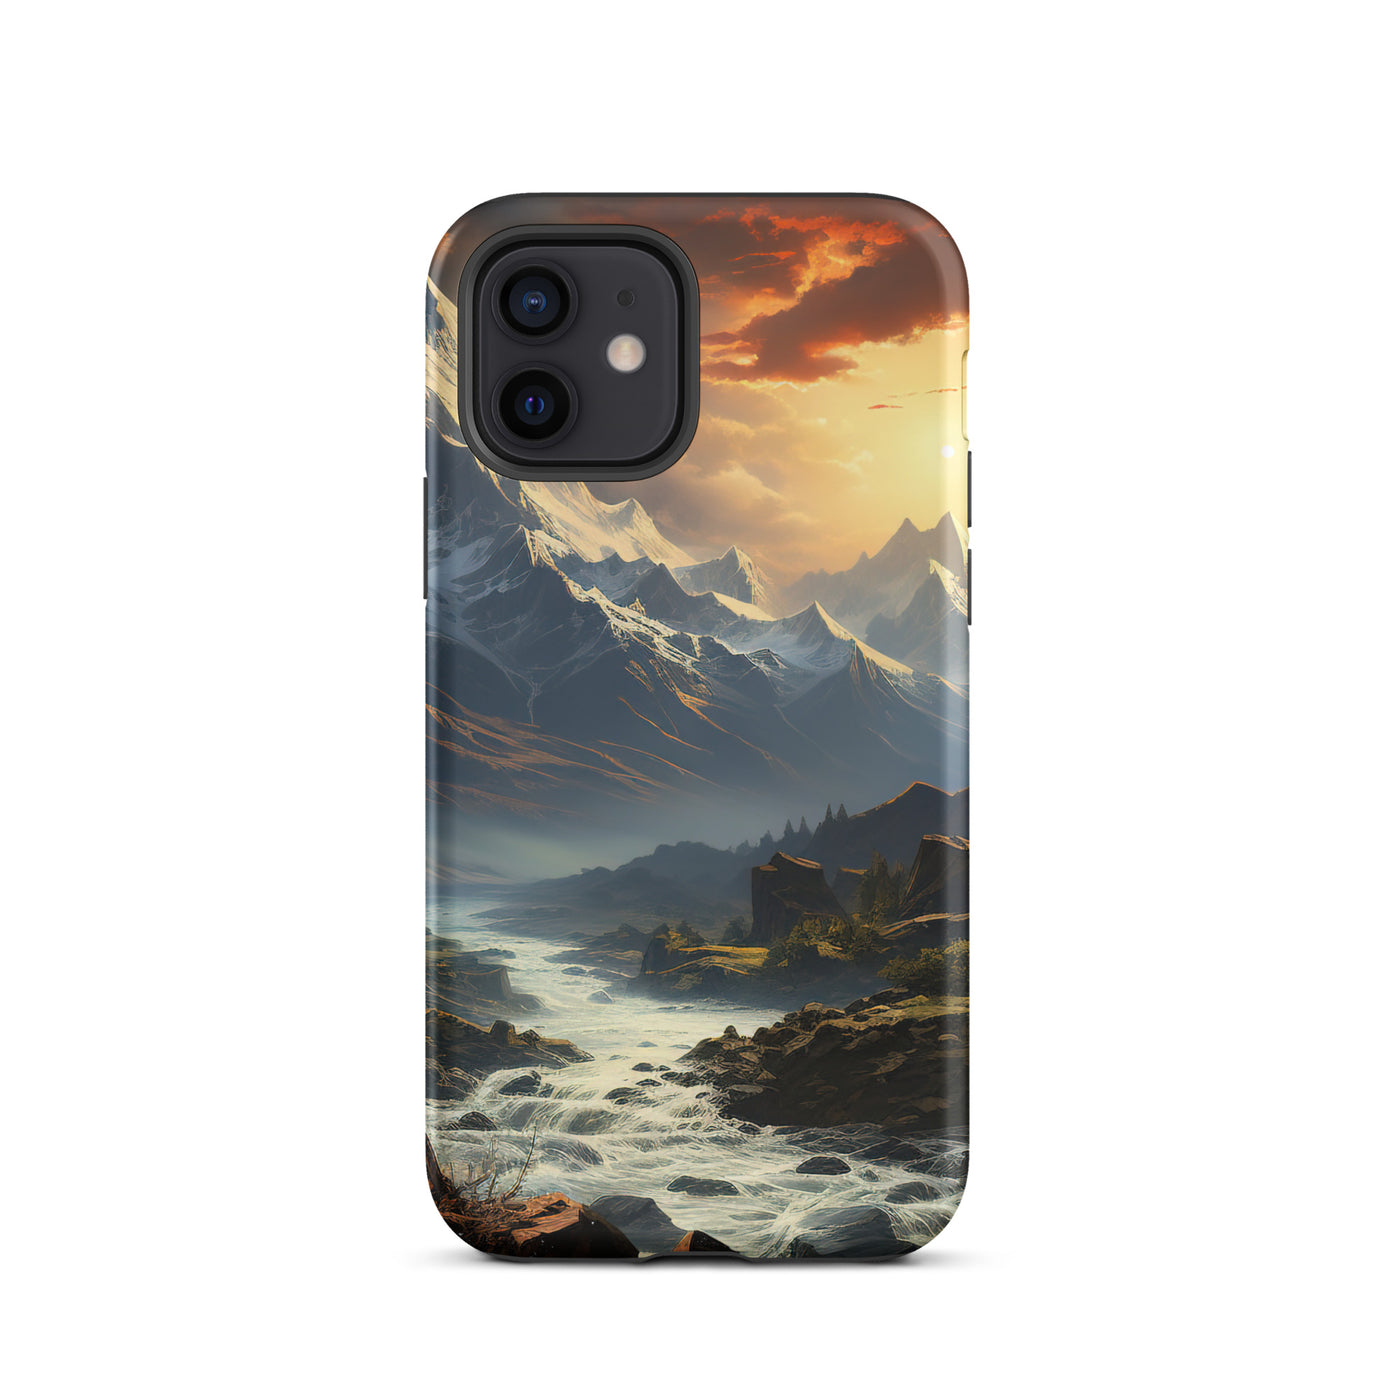 Berge, Sonne, steiniger Bach und Wolken - Epische Stimmung - iPhone Schutzhülle (robust) berge xxx iPhone 12